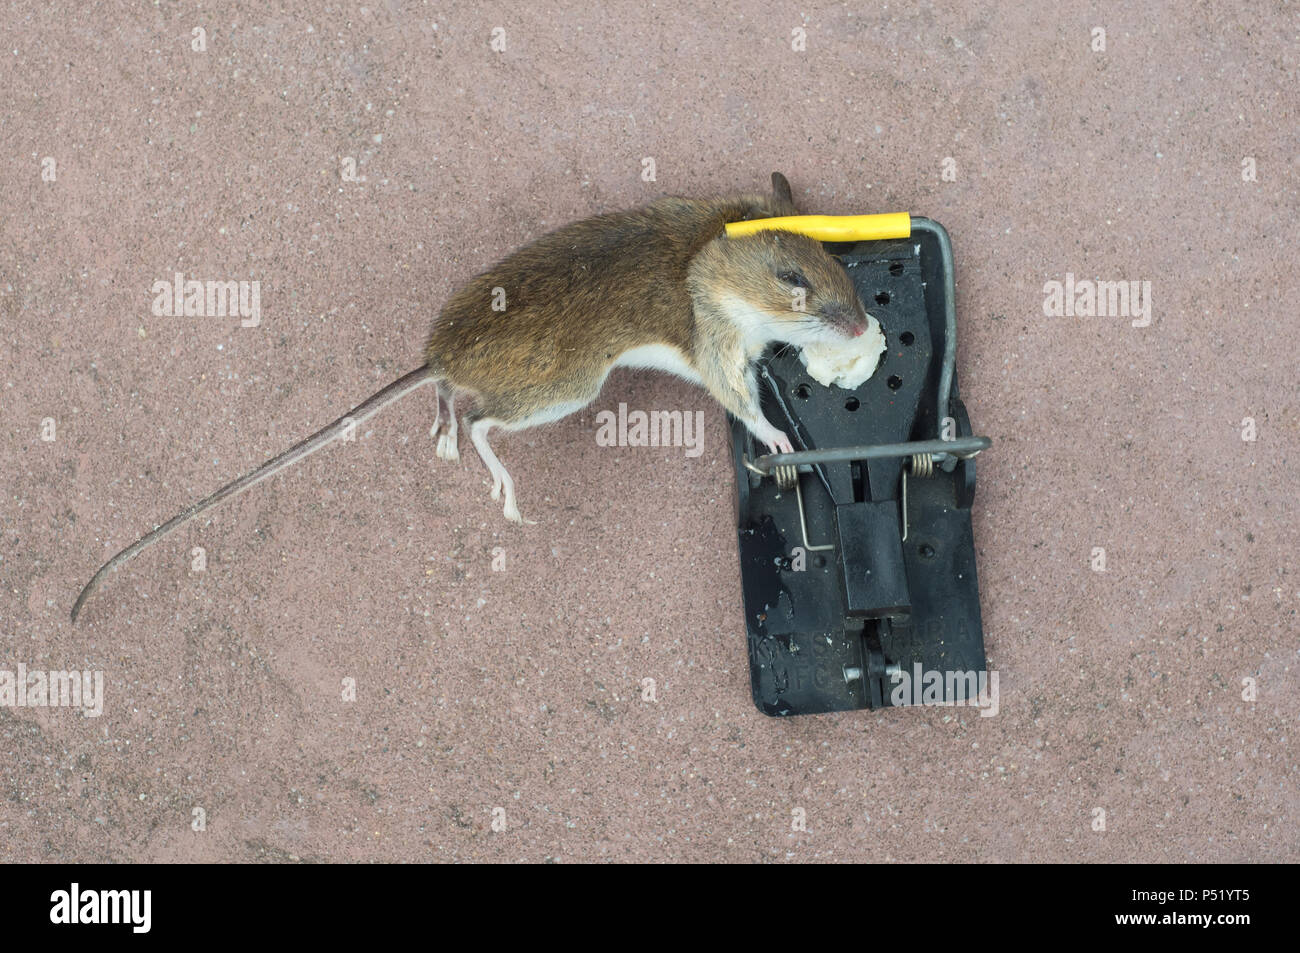 https://c8.alamy.com/comp/P51YT5/a-dead-house-mouse-in-a-mousetrap-P51YT5.jpg